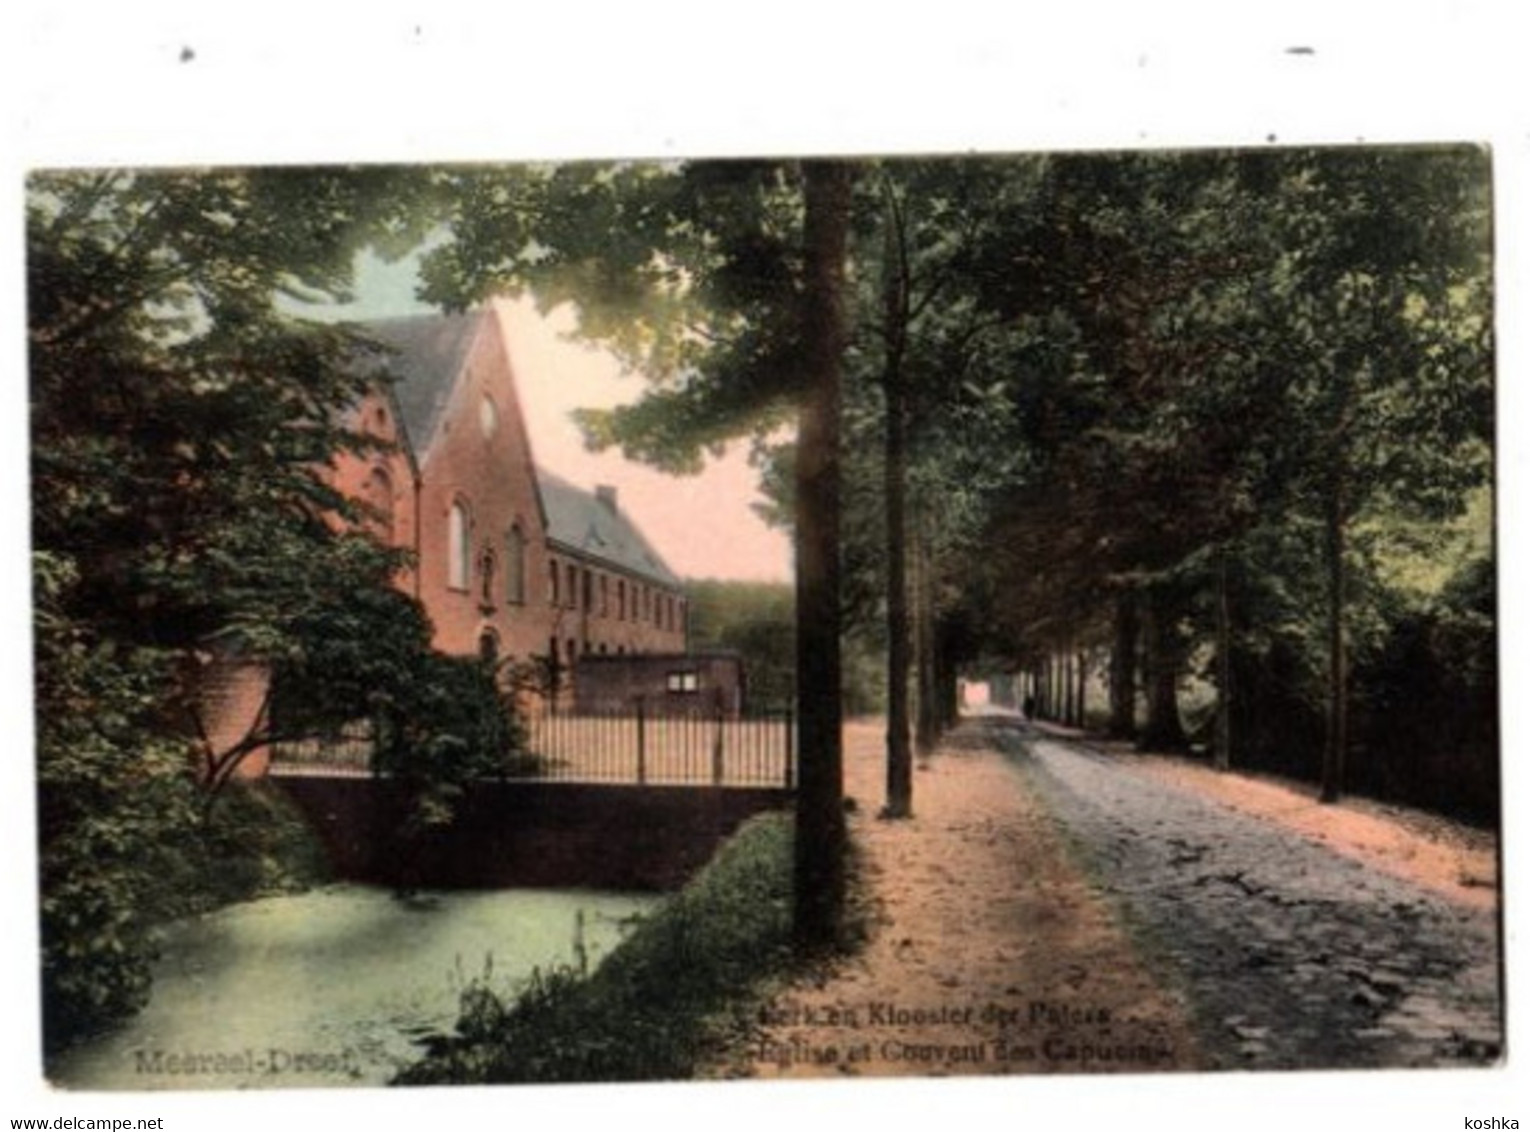 MEERSEL DREEF - Kerk En Klooster Der Paters - Verzonden 1921 - Uitgave Smit - Hoogstraten